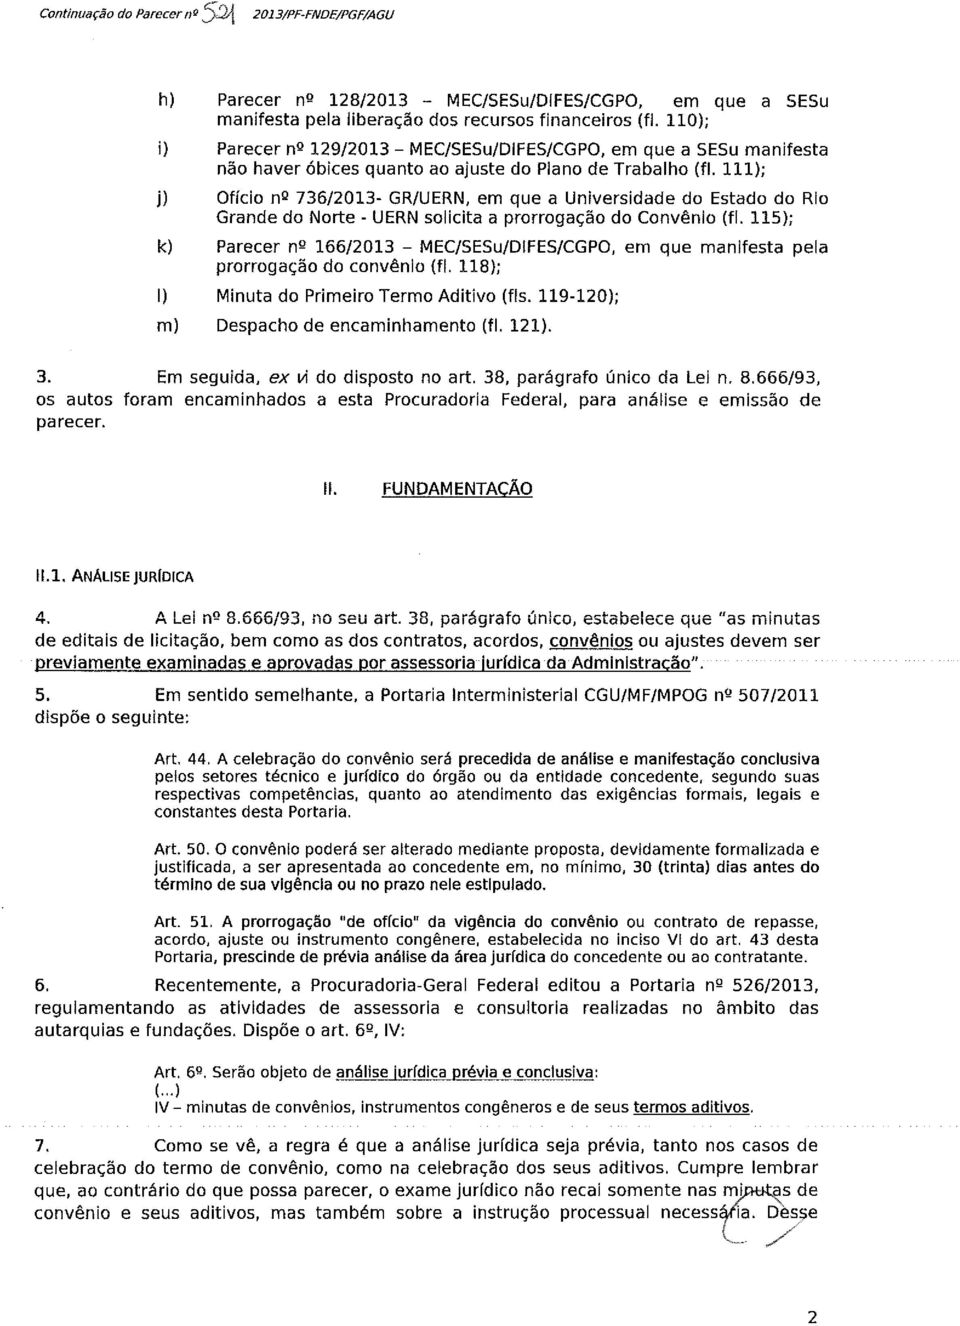 111); j) Ofício nº 736/2013- GR/UERN, em que a Universidade do Estado do Rio Grande do Norte - UERN solicita a prorrogação do Convênio (fi.